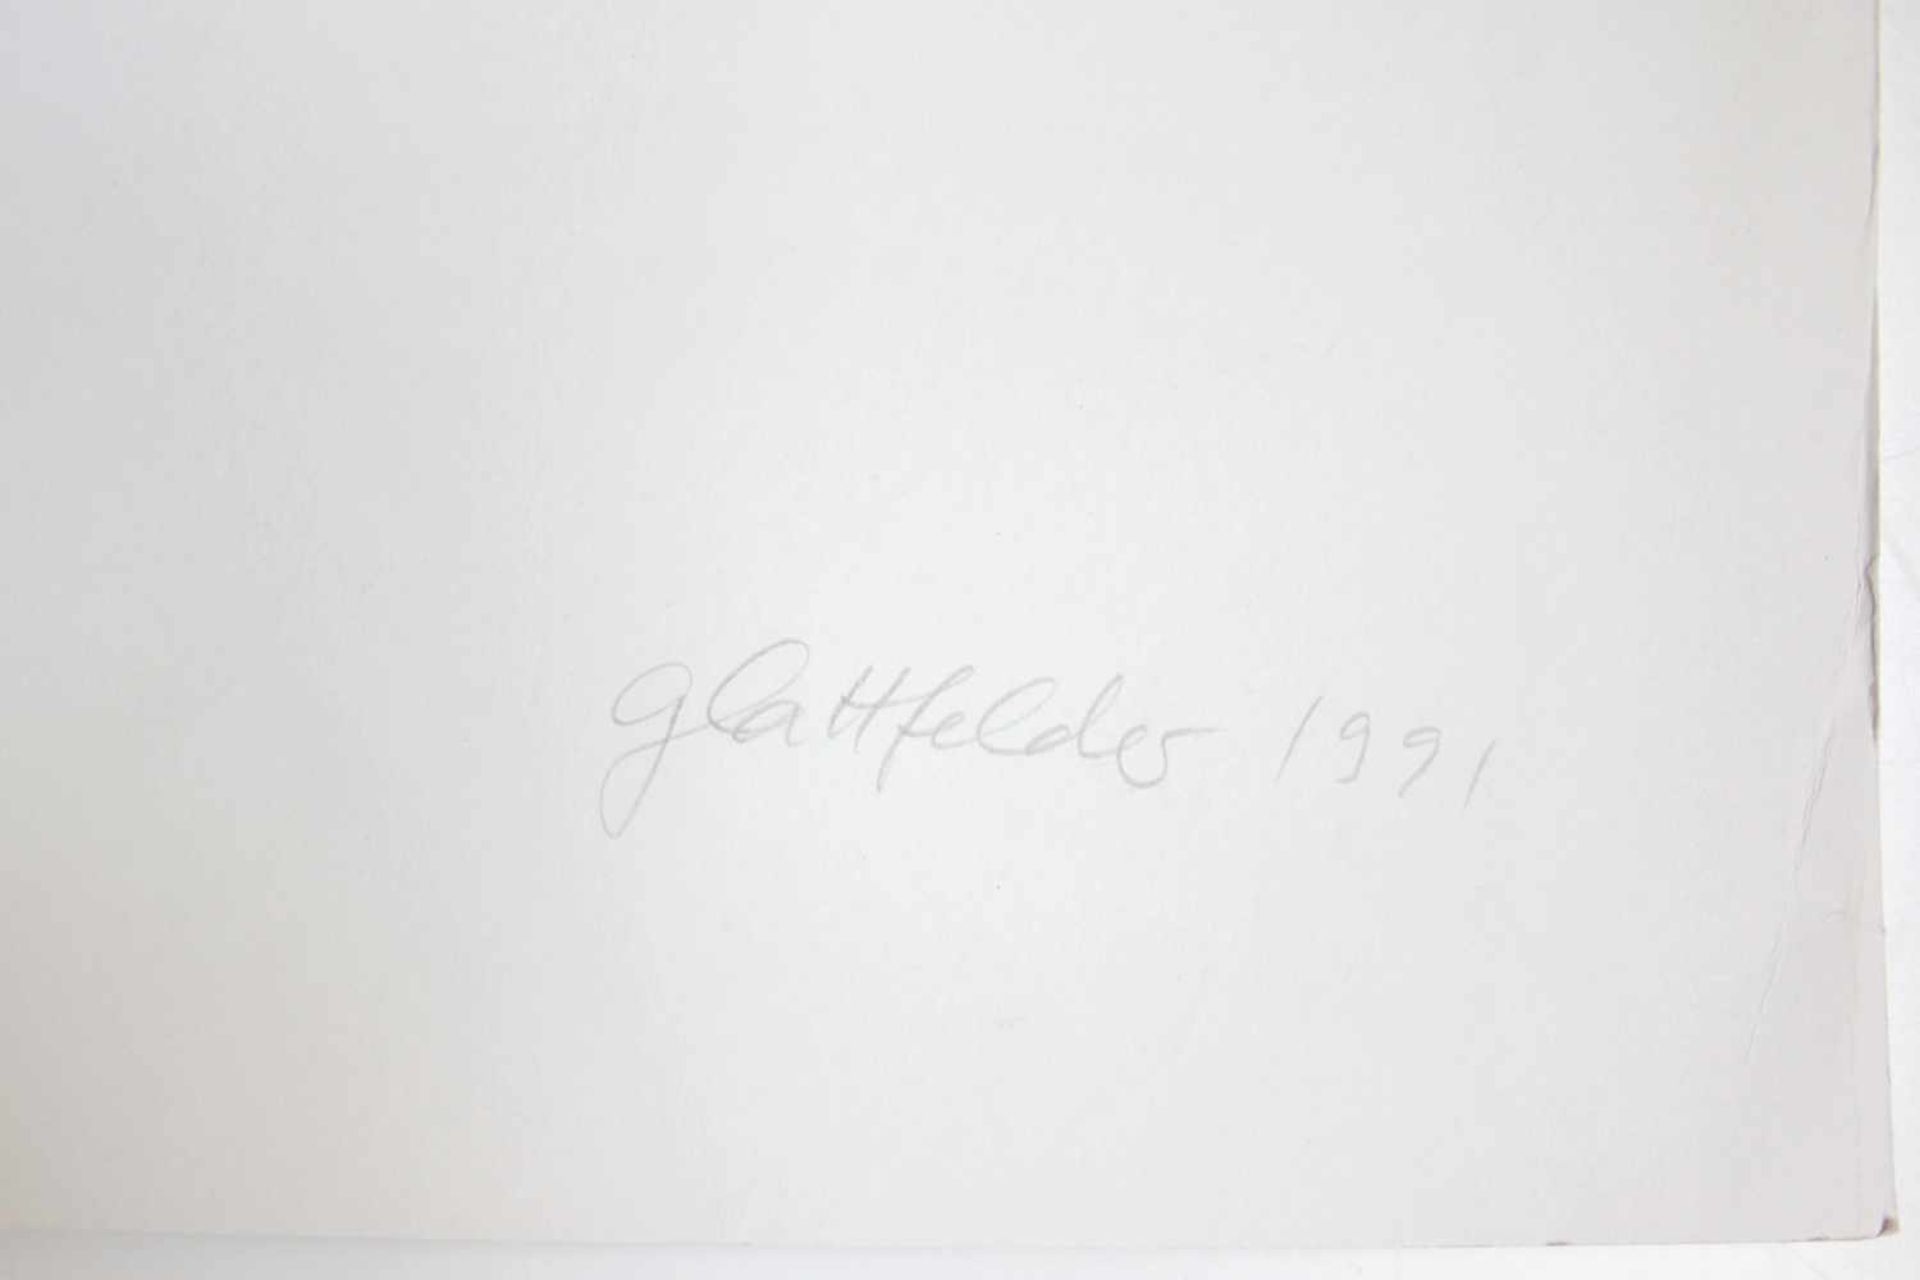 Glattfelder Hans Jörg geb. 1939Ohne Titel1991Siebdruck auf Papier, Ed. 10083,5 x 59,5 cm - Image 2 of 2